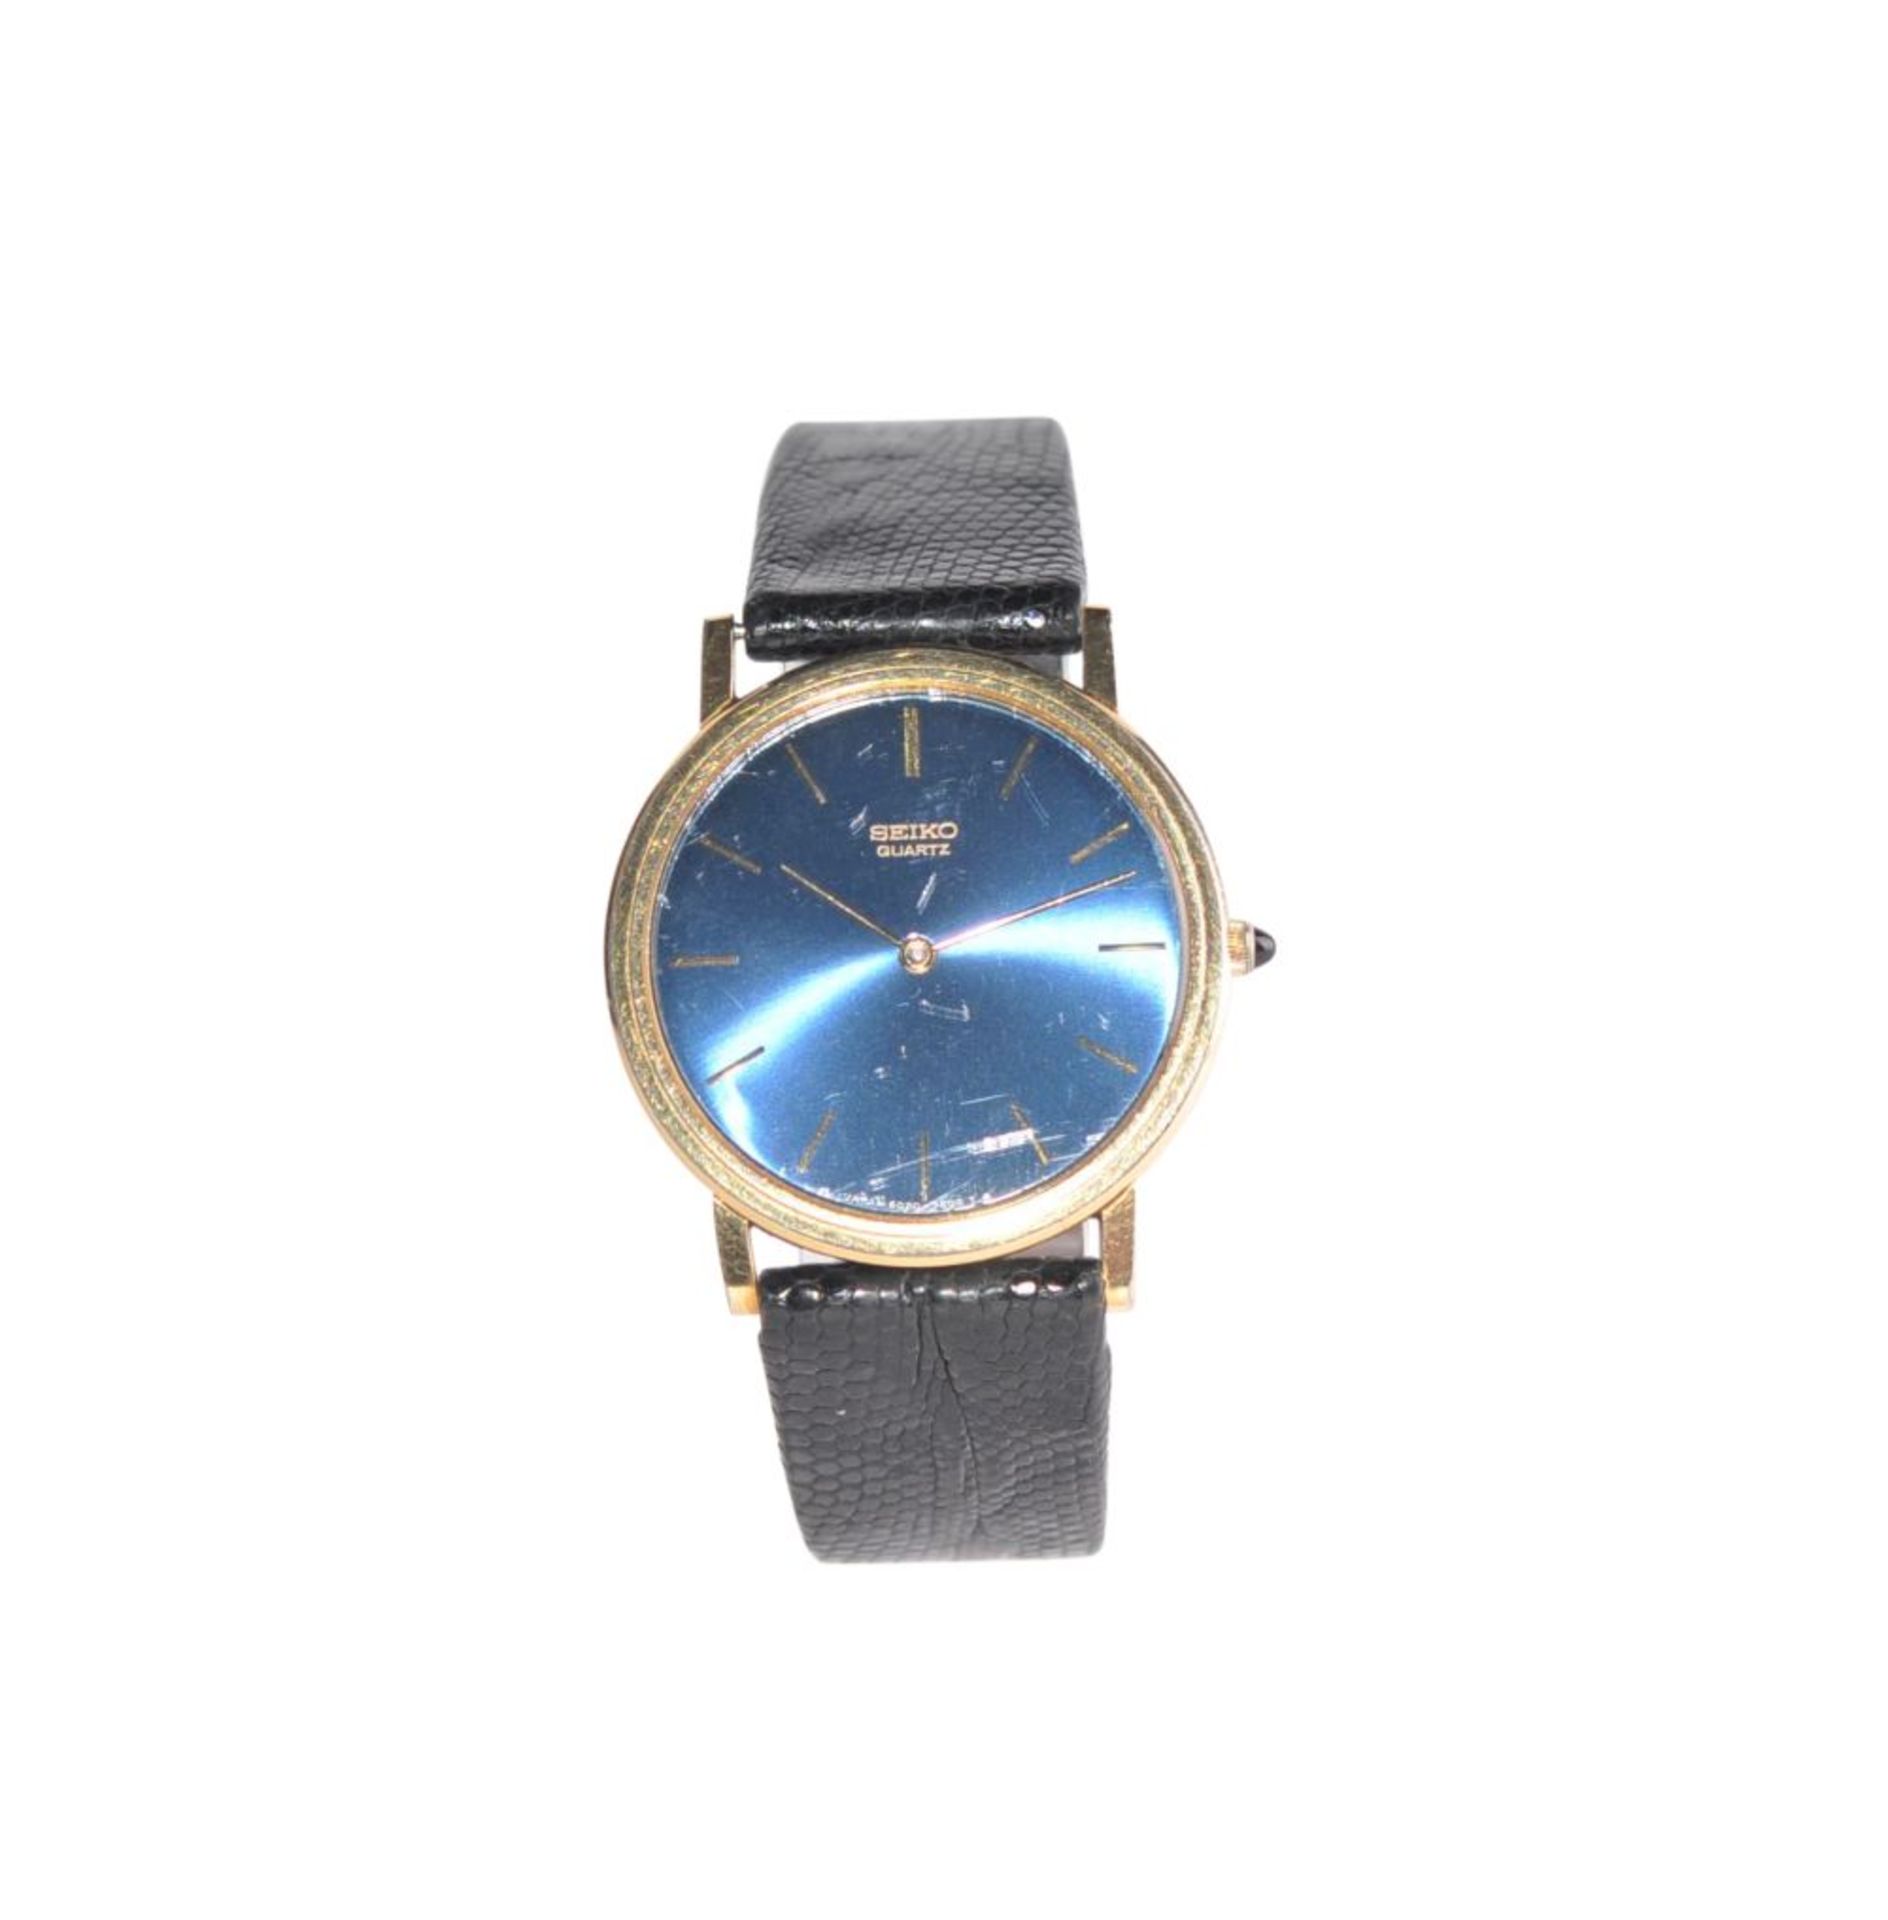 SeikoSeiko wristwatch gold-plated with blue dial, diameter 33mm, quartz movementSeikoSeiko